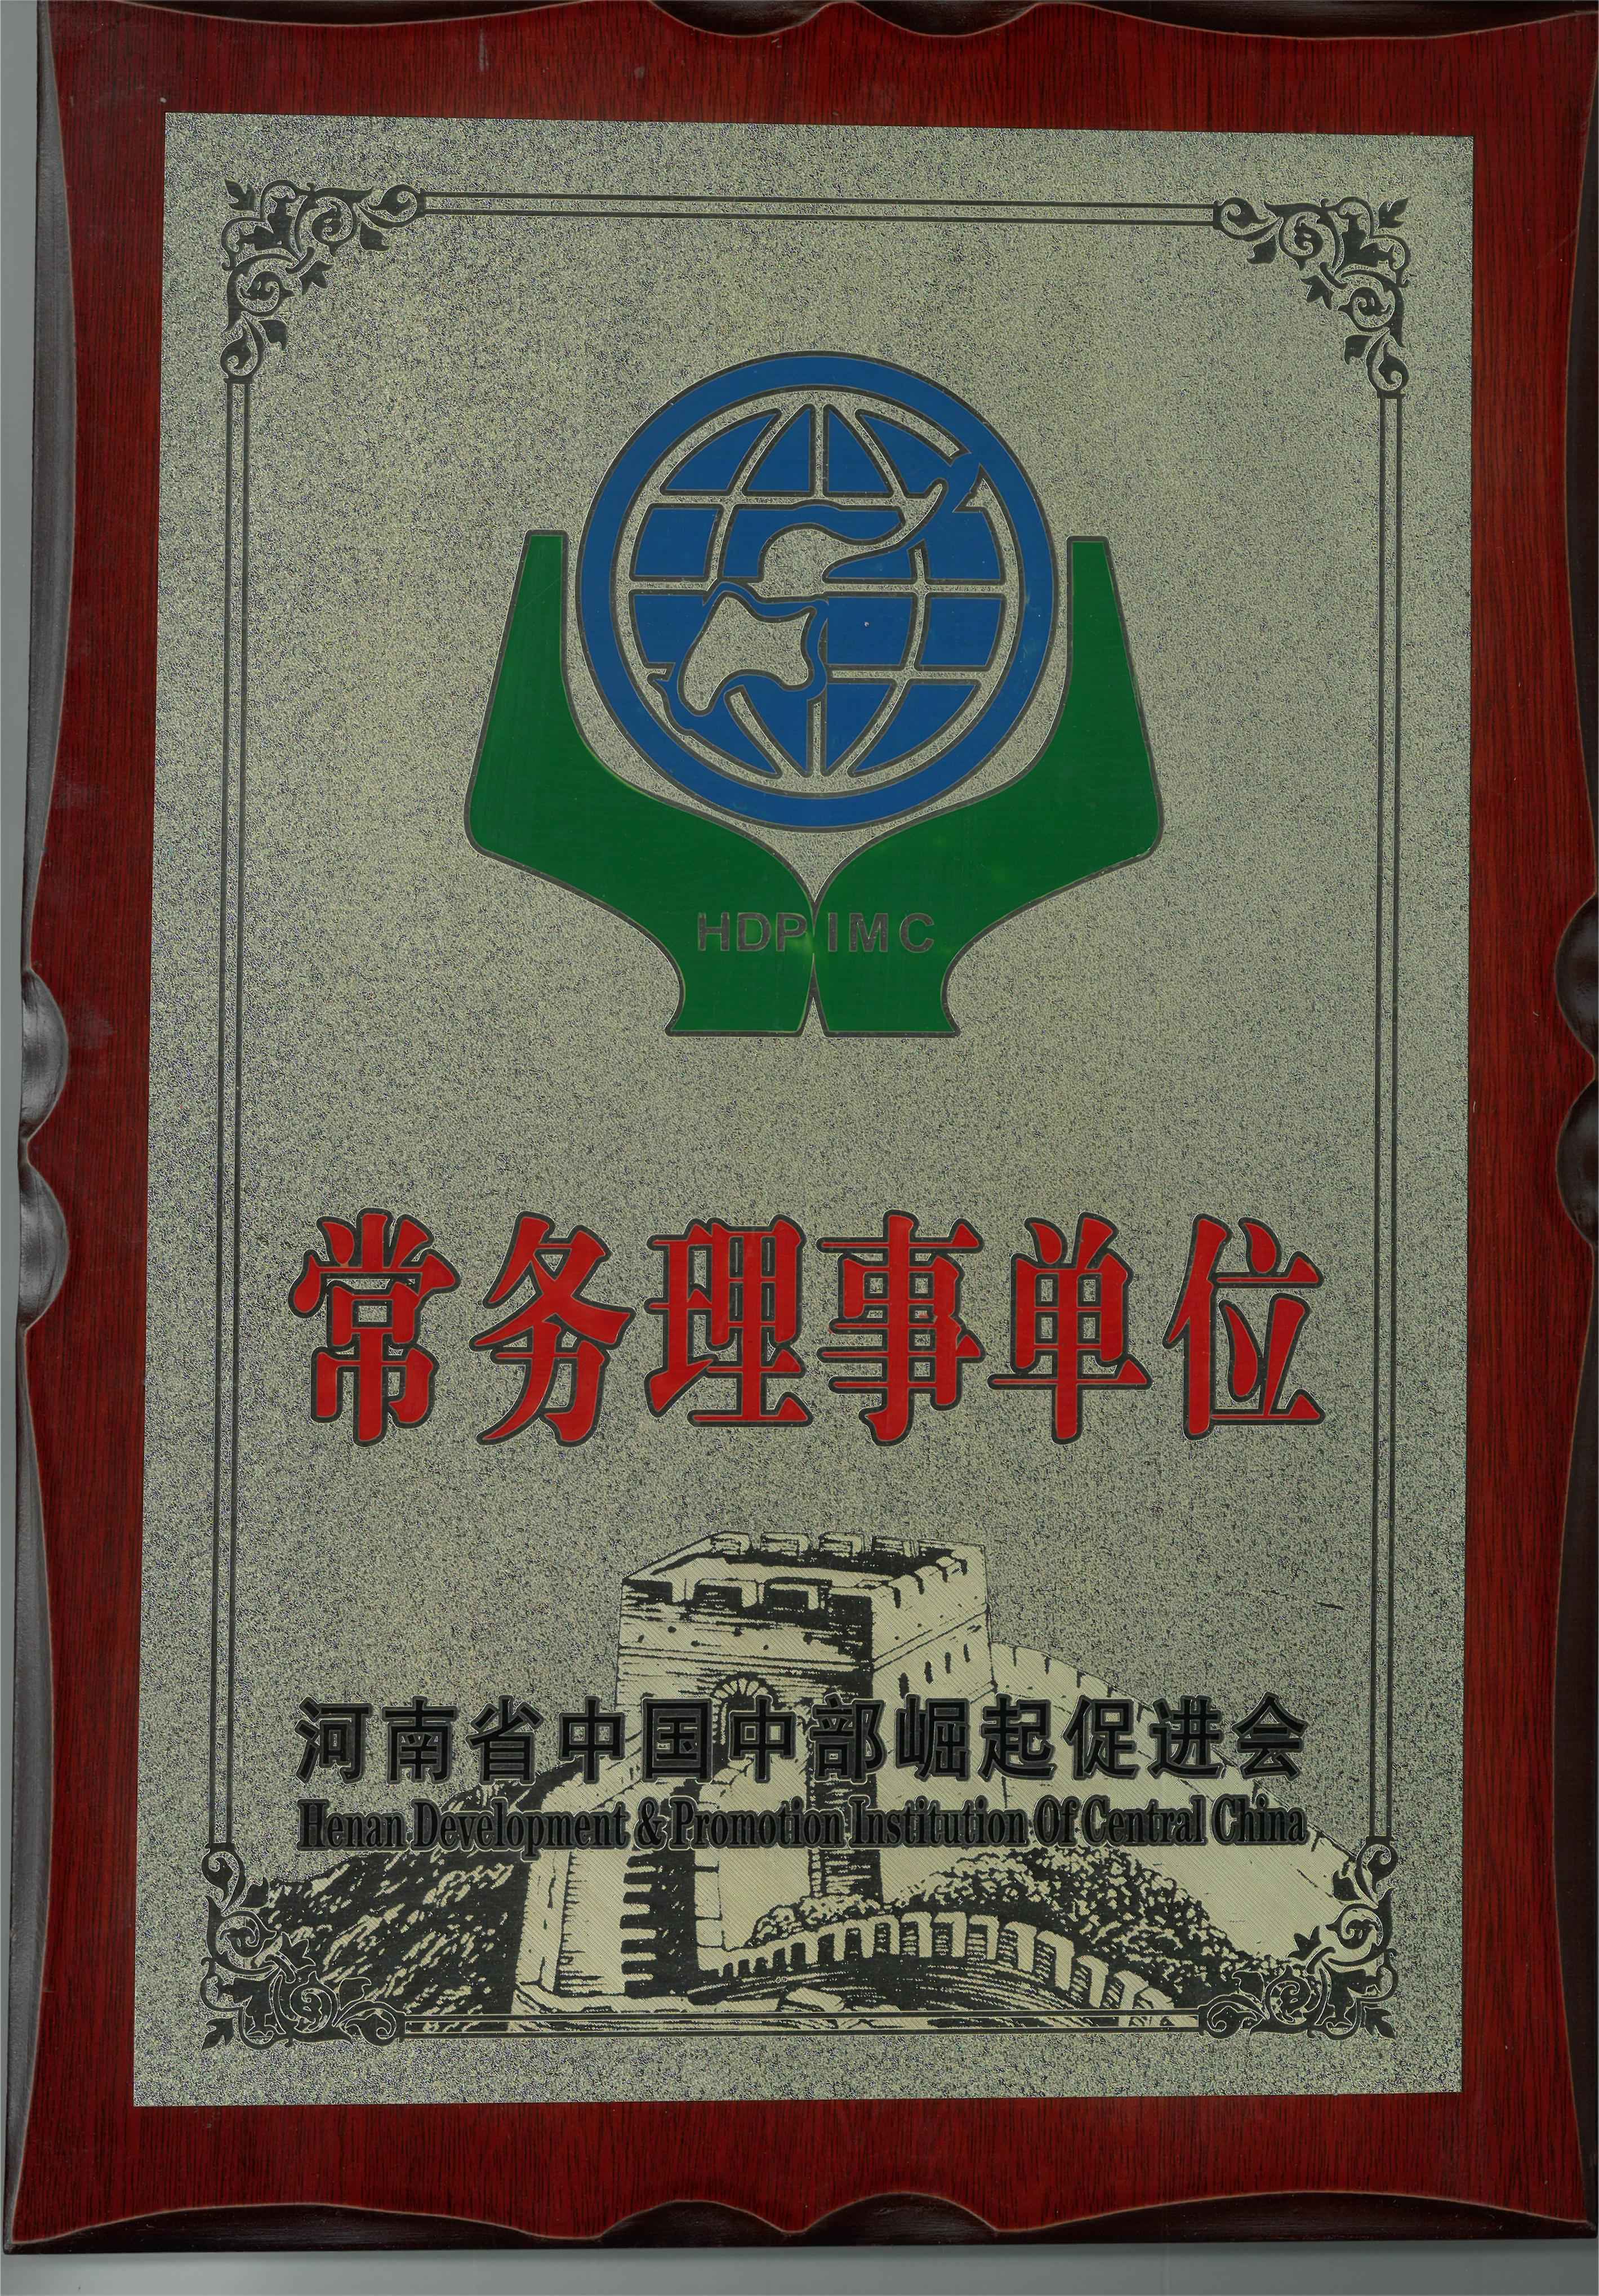 賀中海域安榮獲河南省中國中部崛起促進會常務理事單位